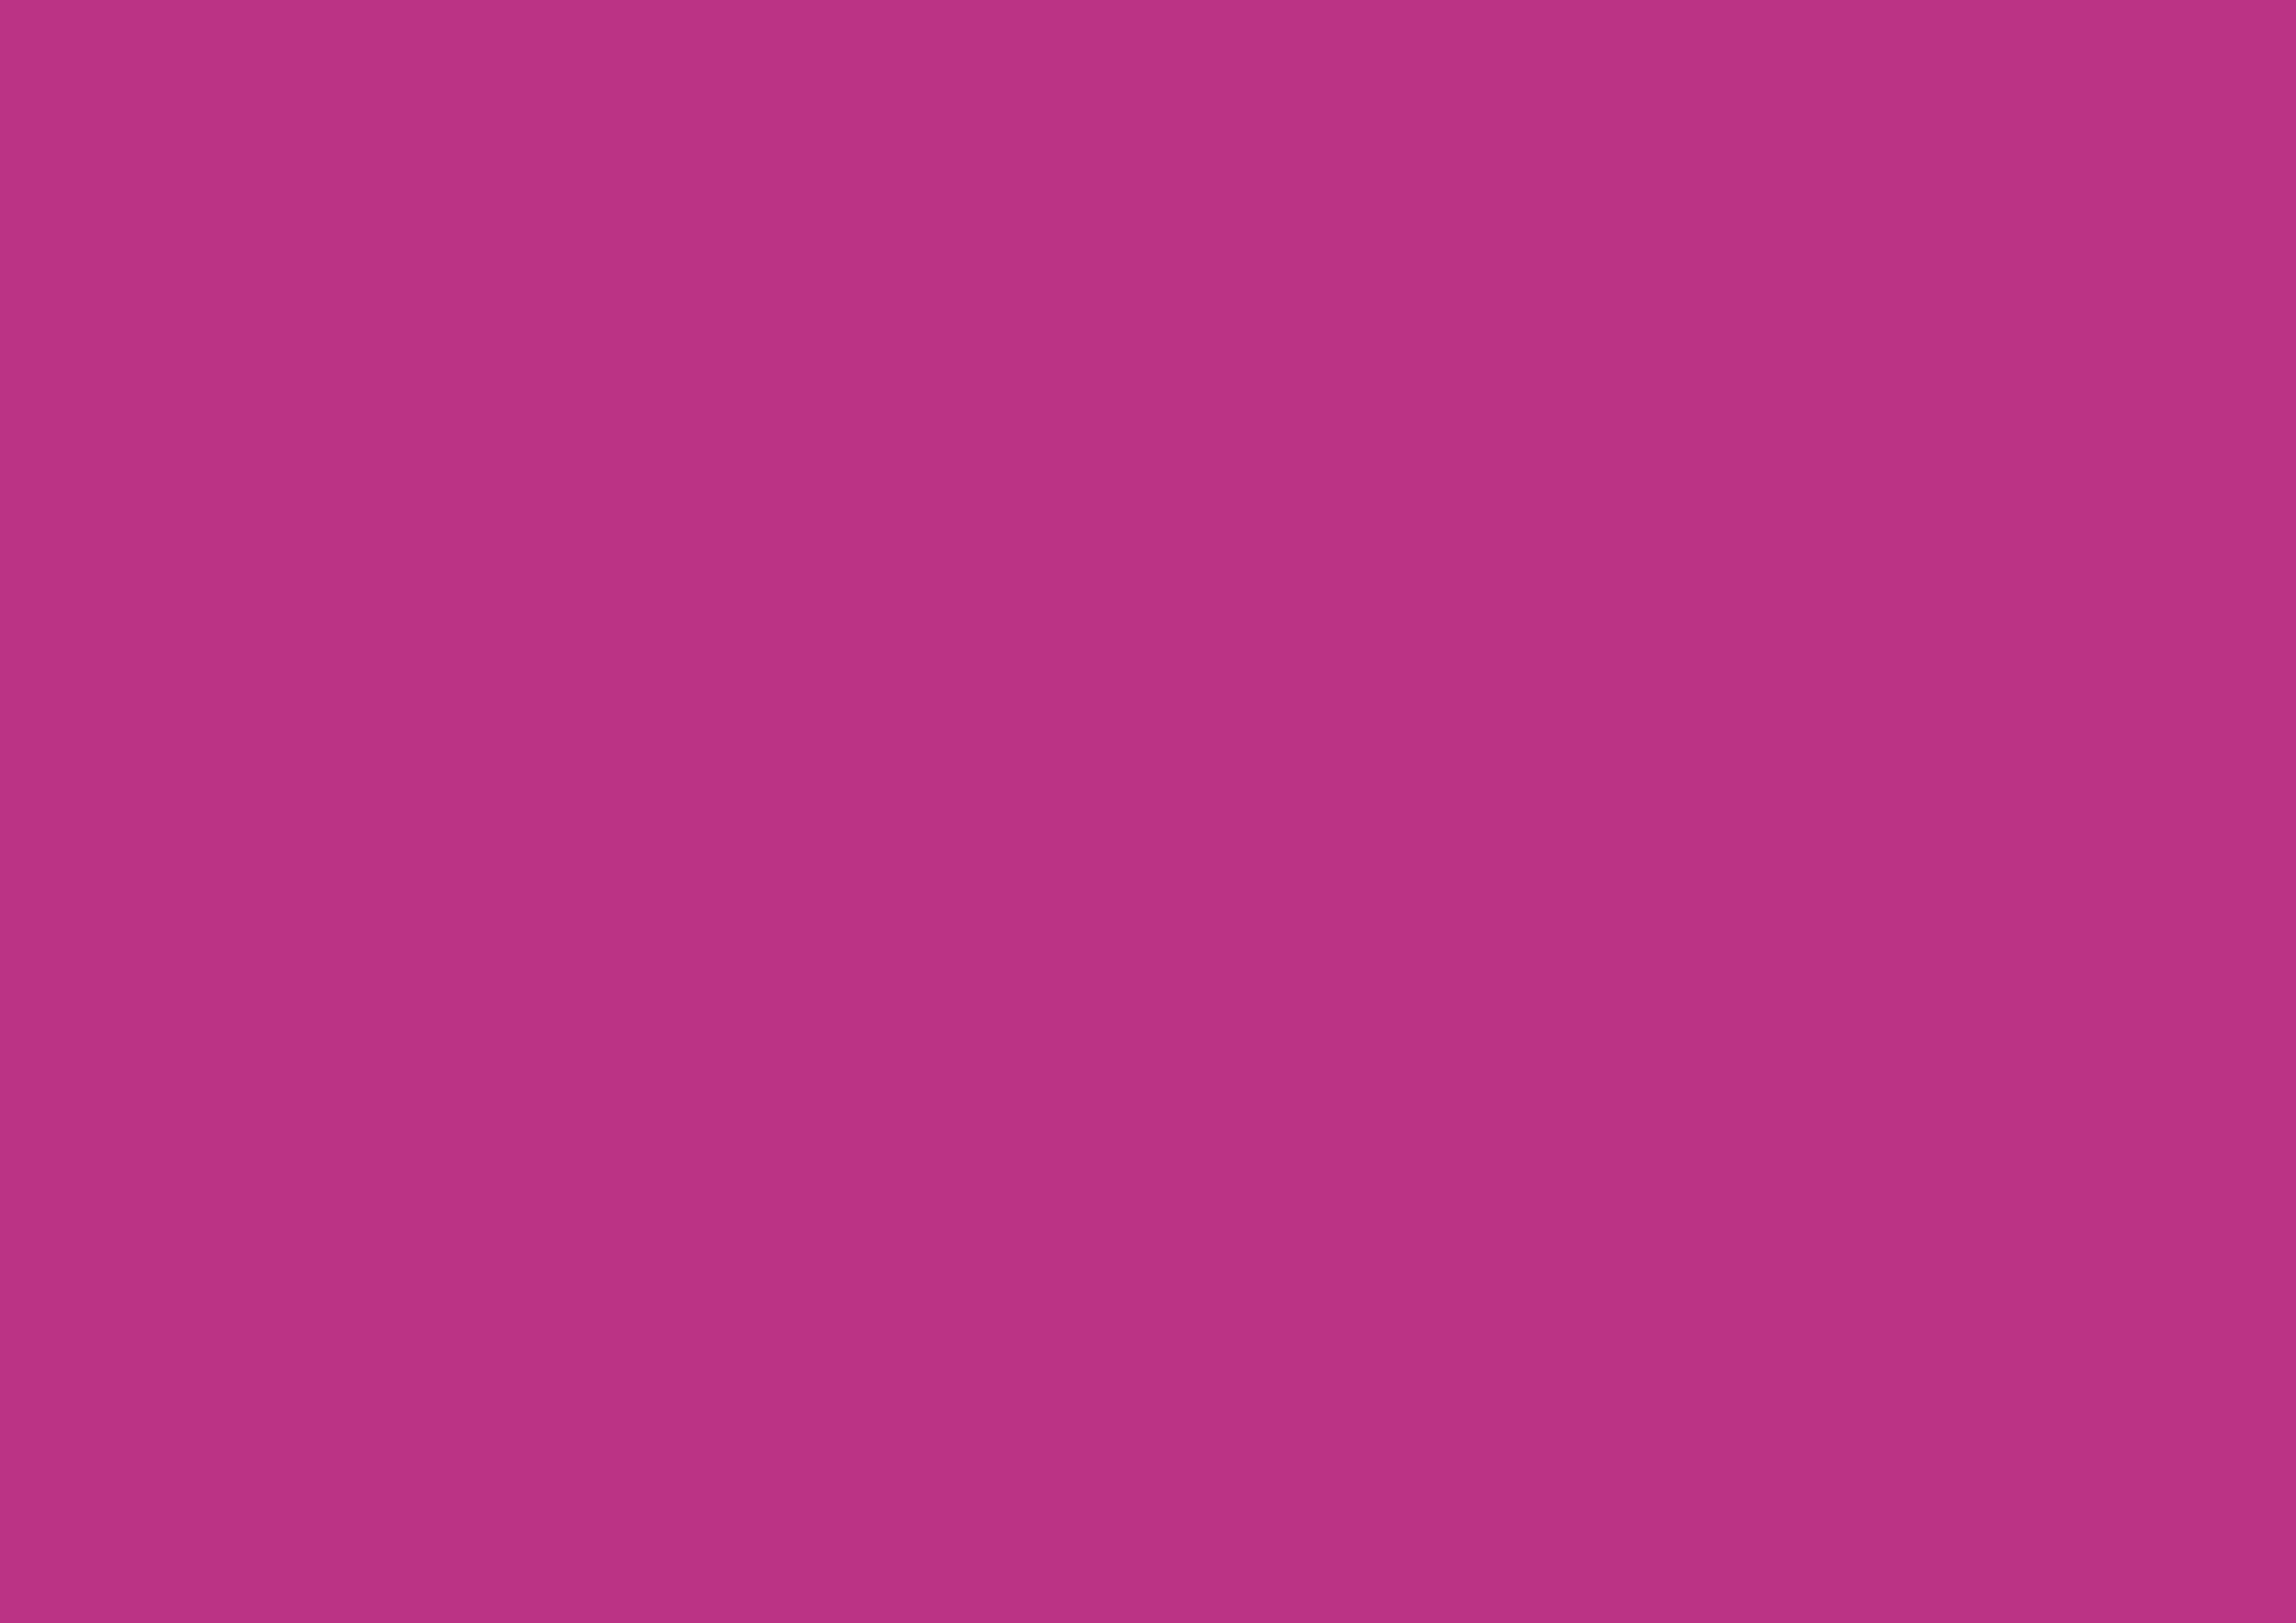 3508x2480 Medium Red-violet Solid Color Background